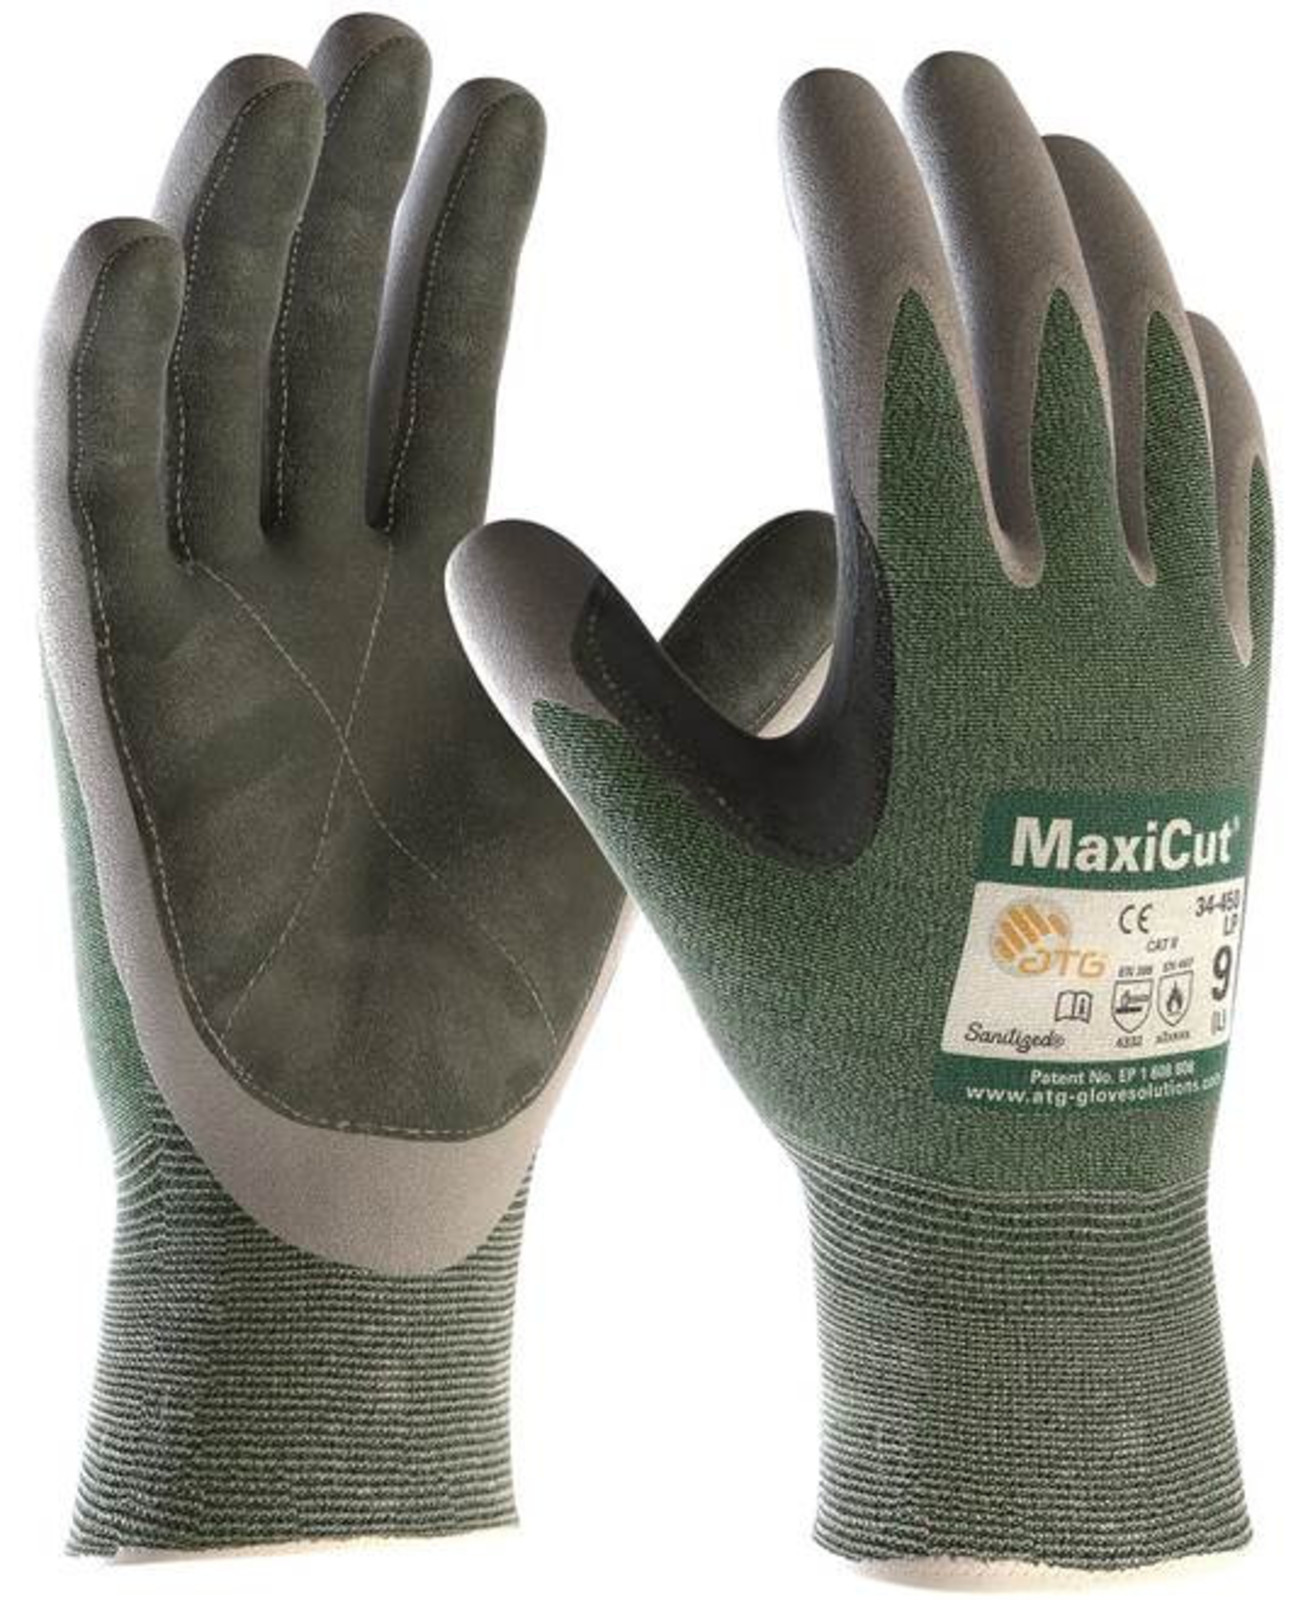 Protiporézne rukavice ATG MaxiCut 34-450 LP - veľkosť: 9/L, farba: zelená